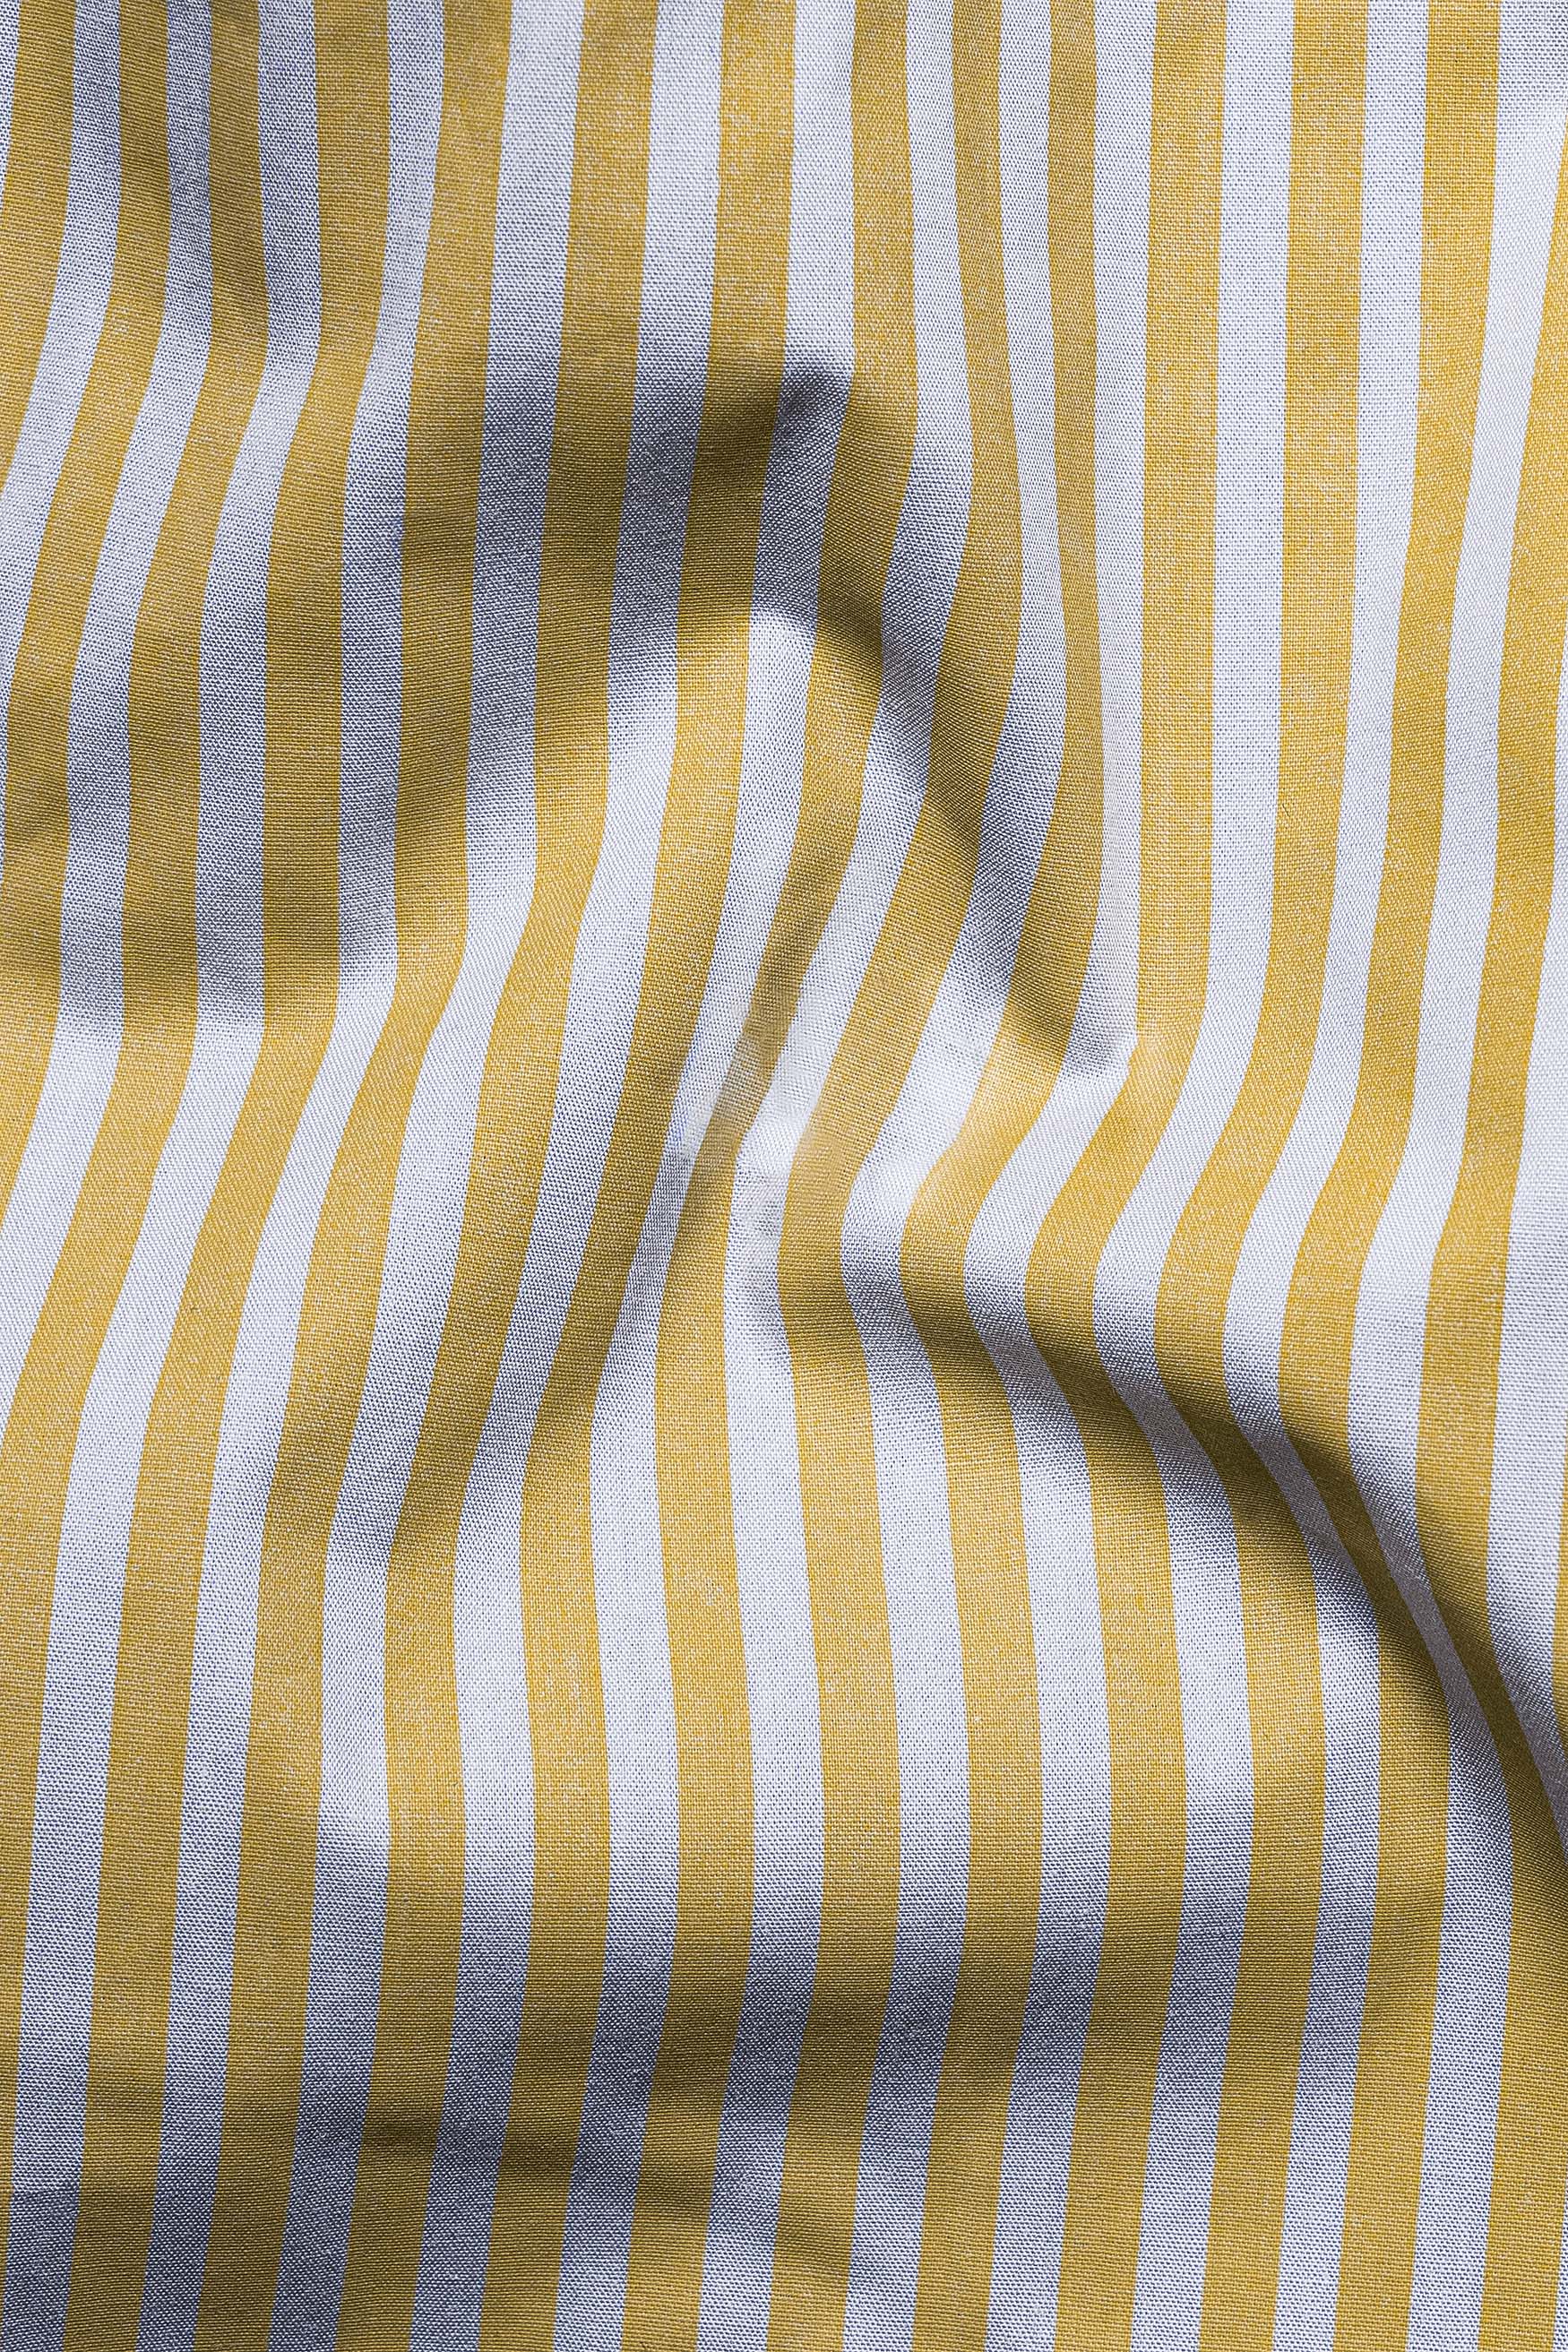 Dijon Yellow and Selago Gray Striped Premium Cotton Shirt